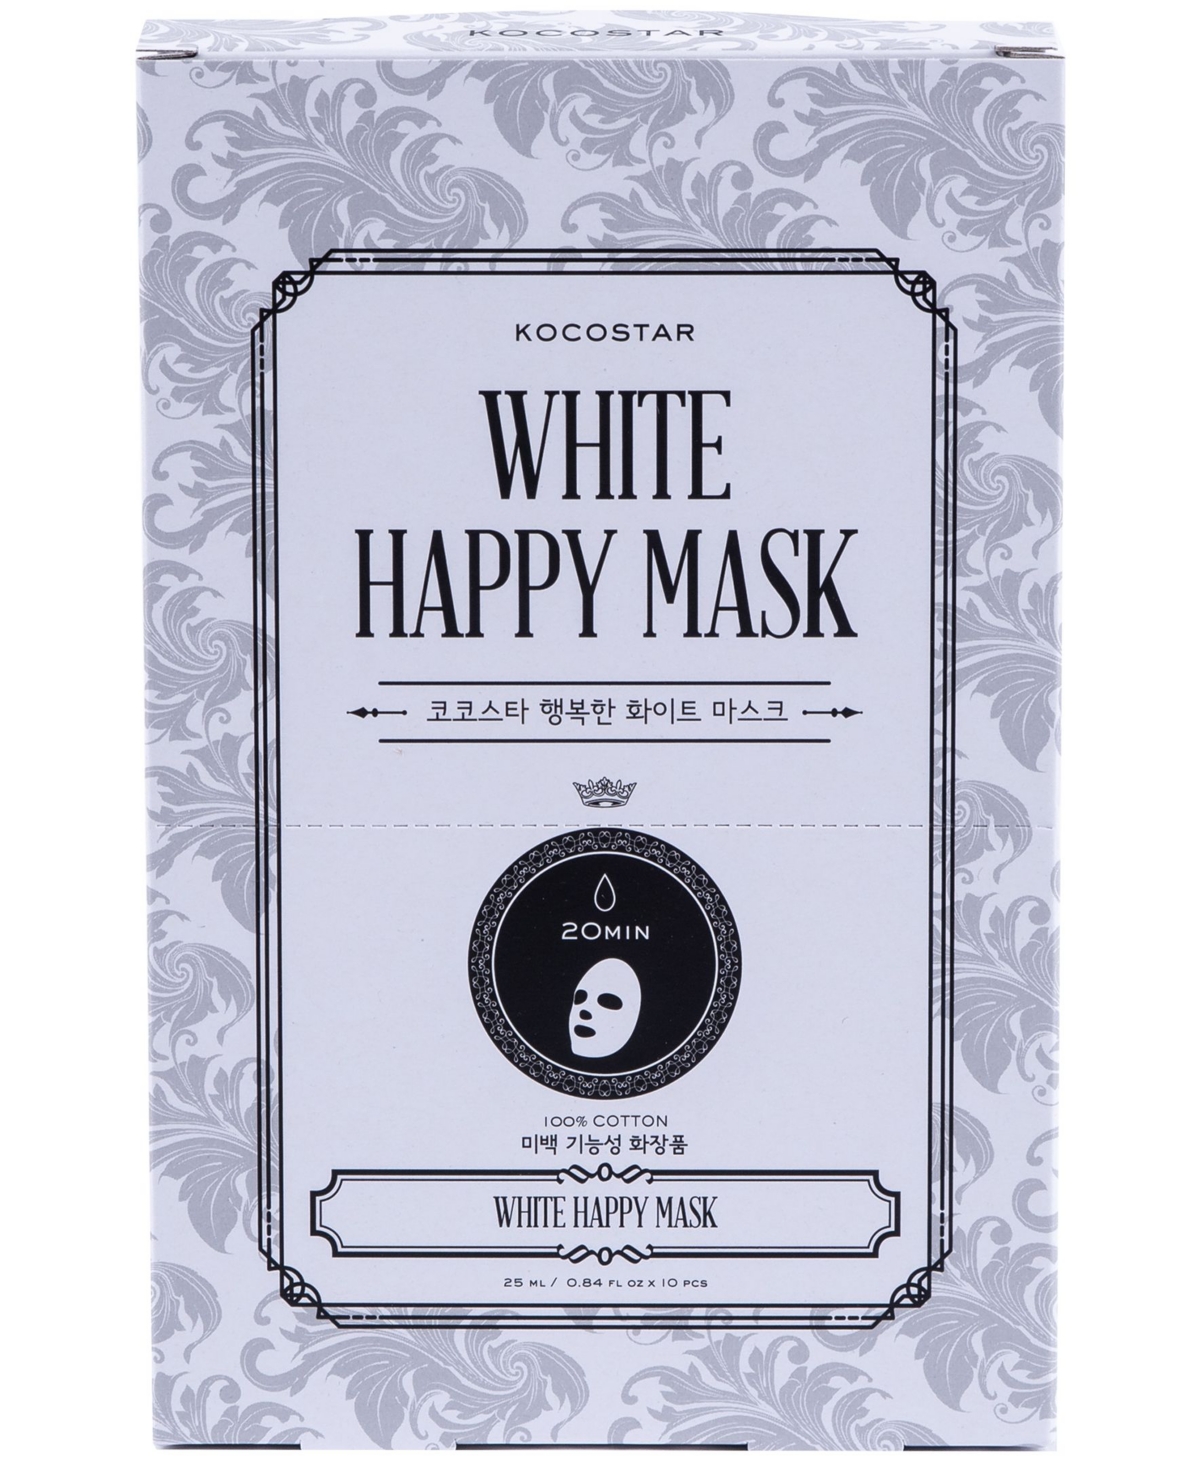 Kocostar White Happy Mask, Pack of 10